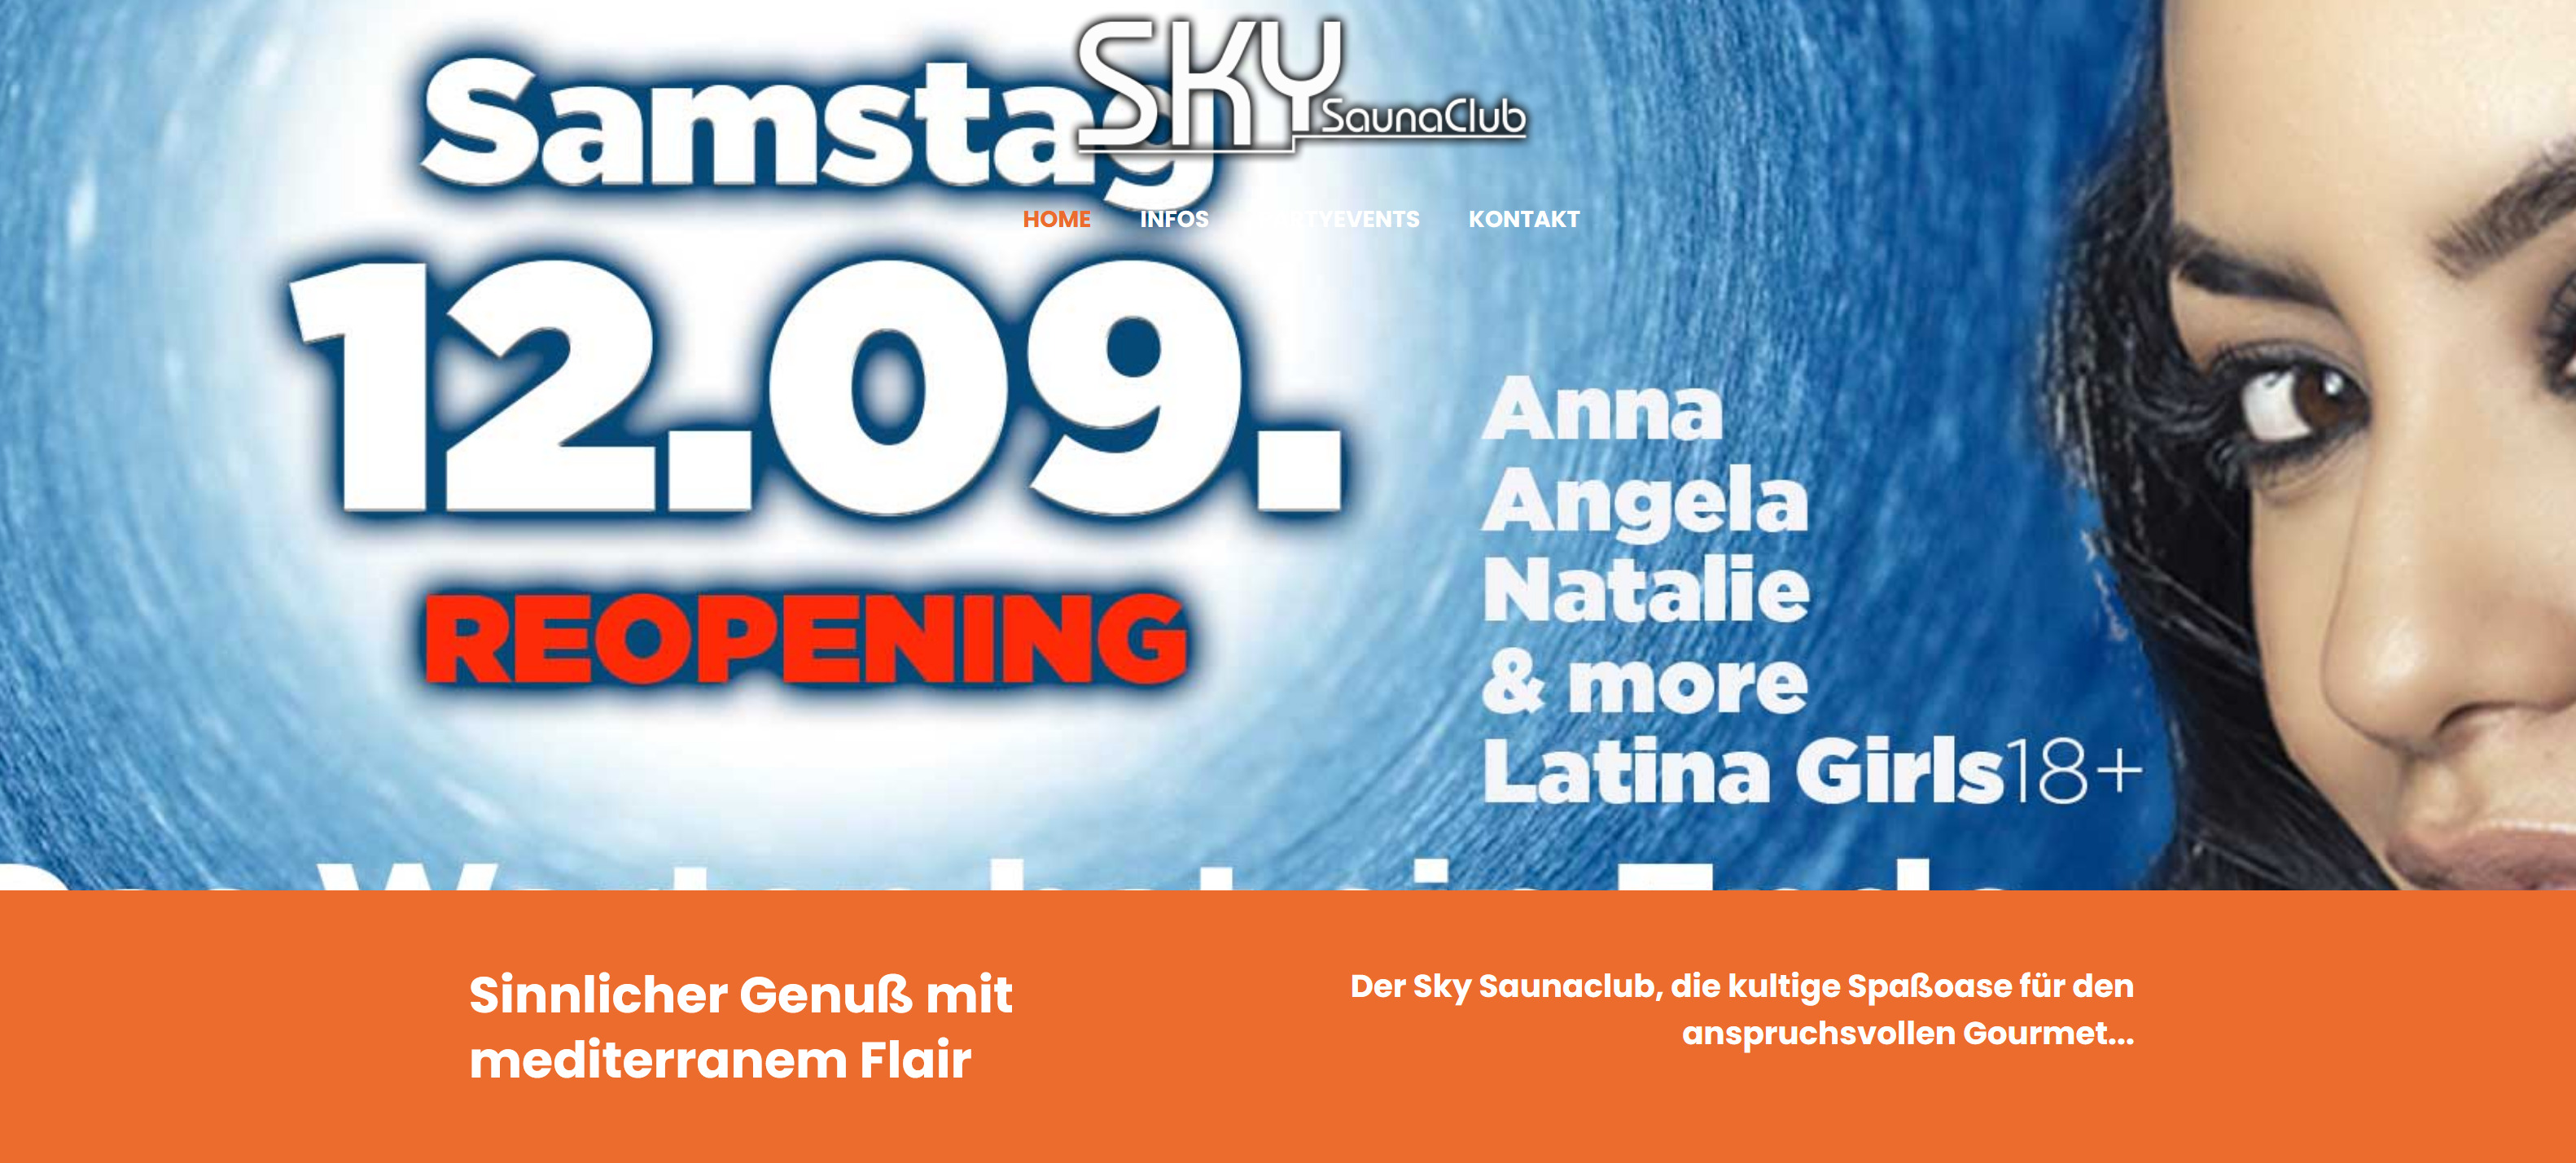 Screenshot_2020-09-09 Willkommen im Sky Saunaclub - Der Latina FKK Saunaclub an der Autobahn 46 Wuppertal Varresbeck.jpg